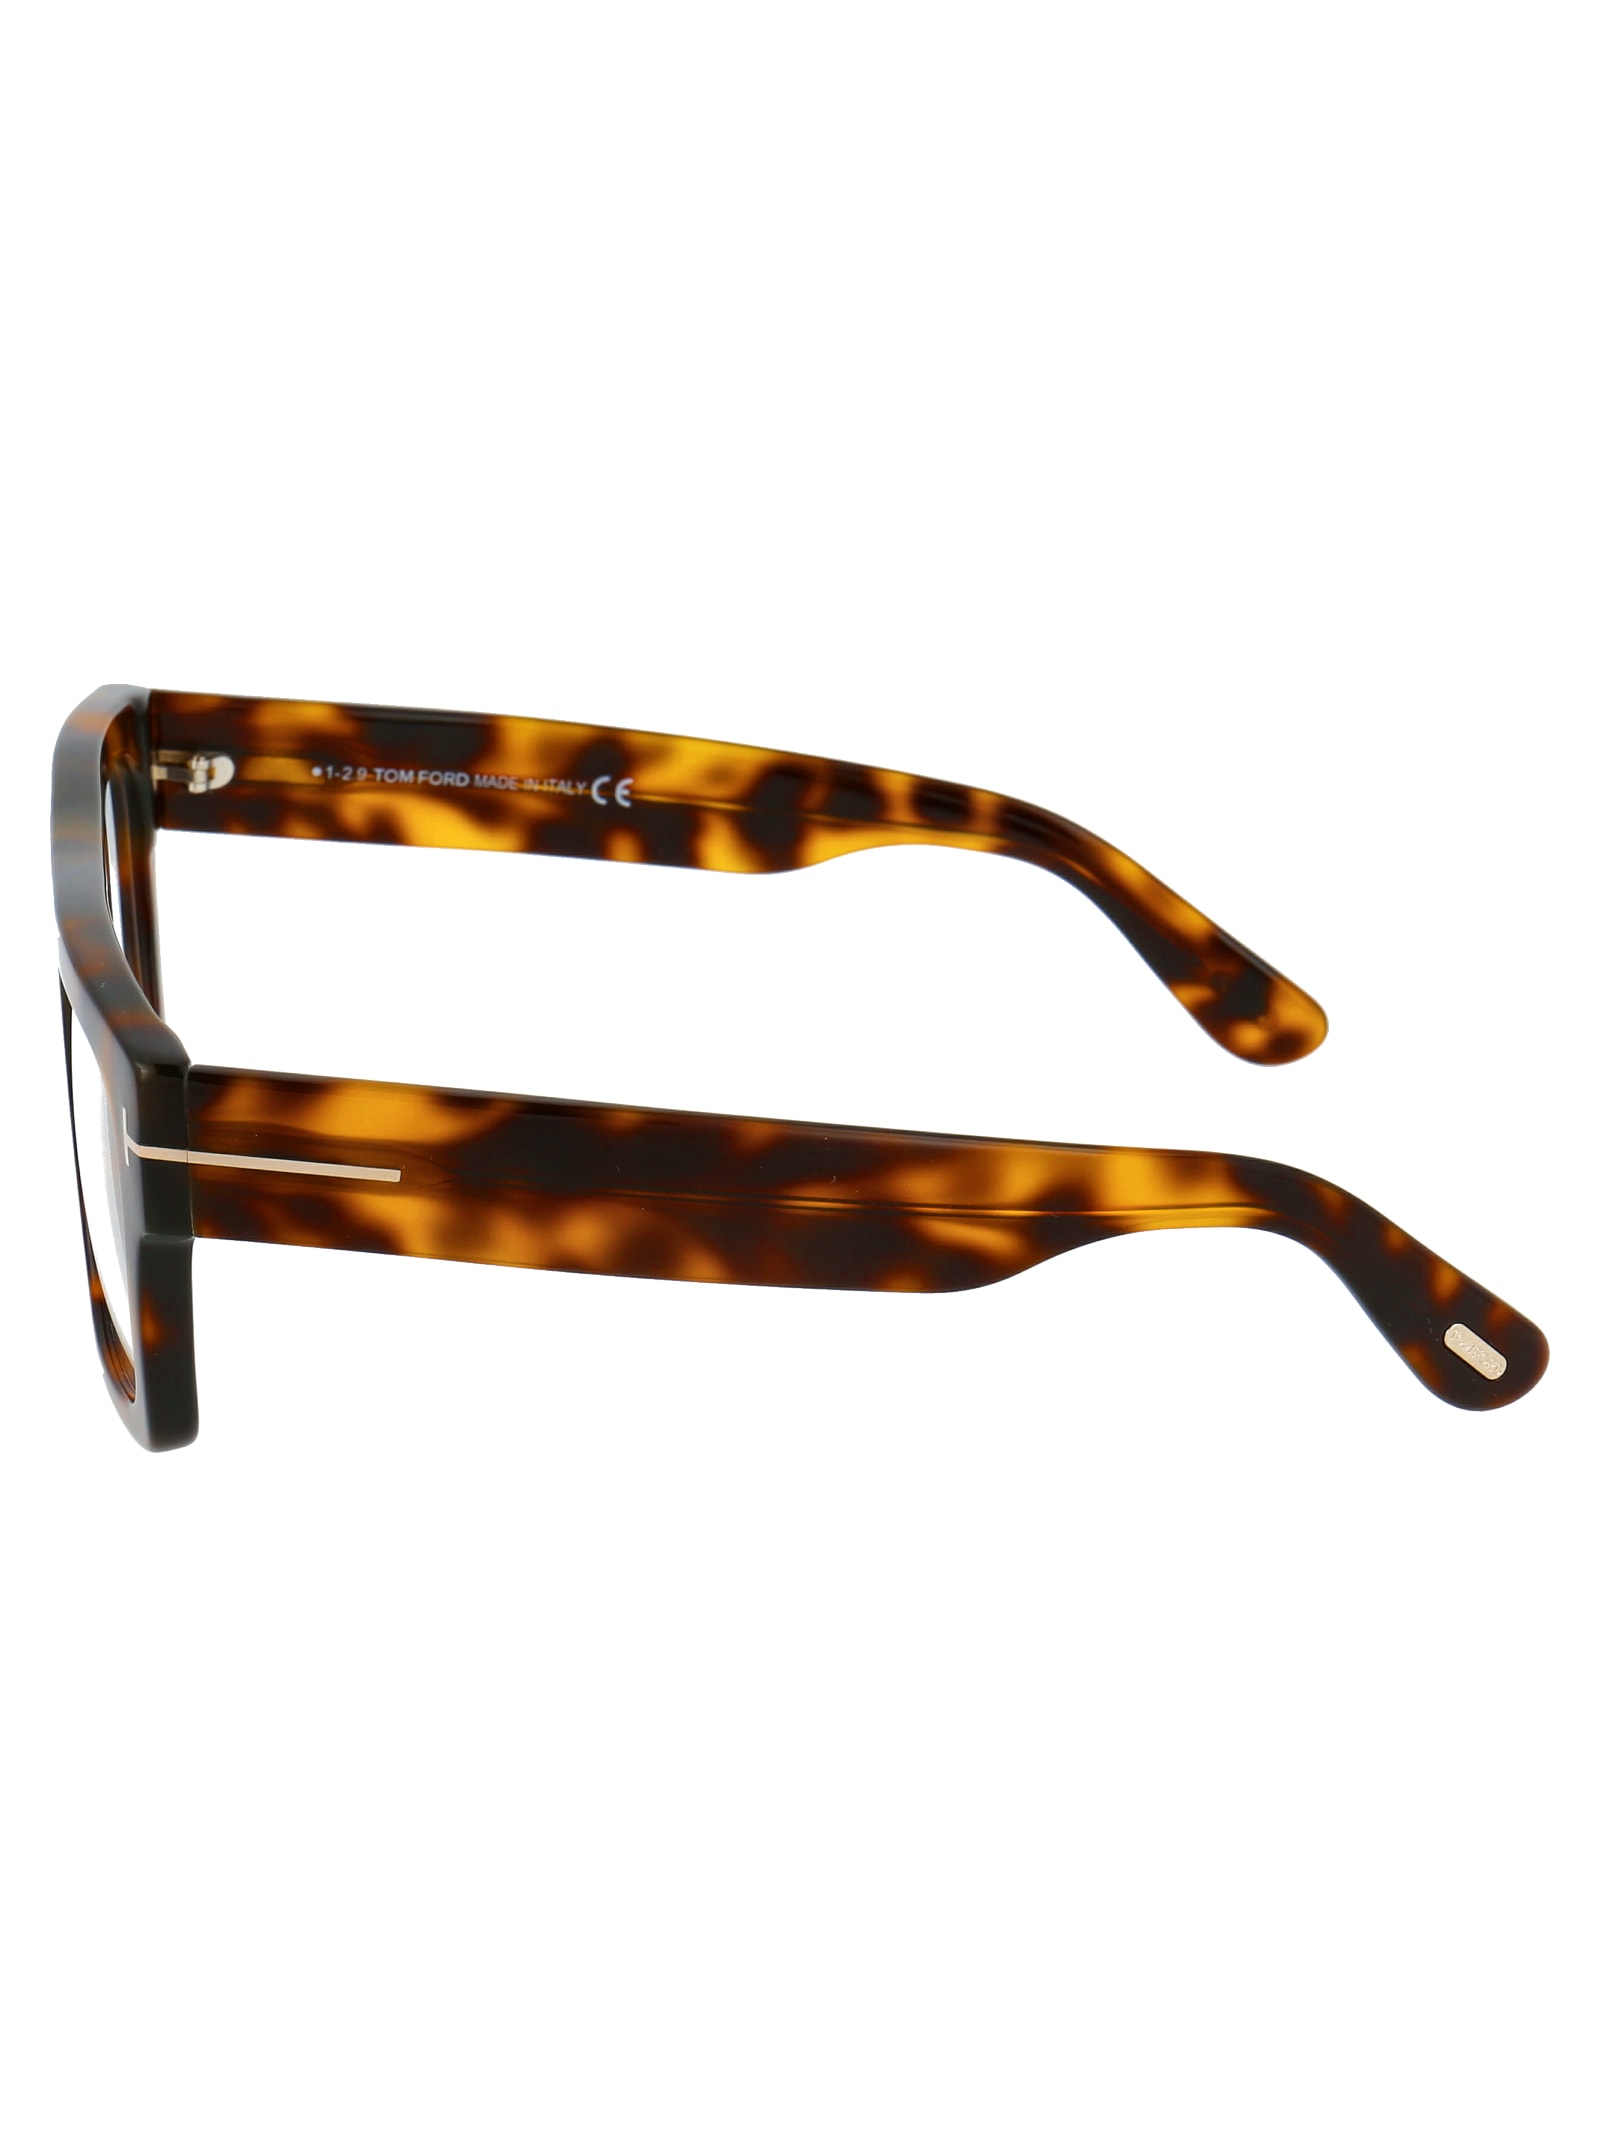 Shop Tom Ford Ft5634-b Glasses In 056 Avana/altro